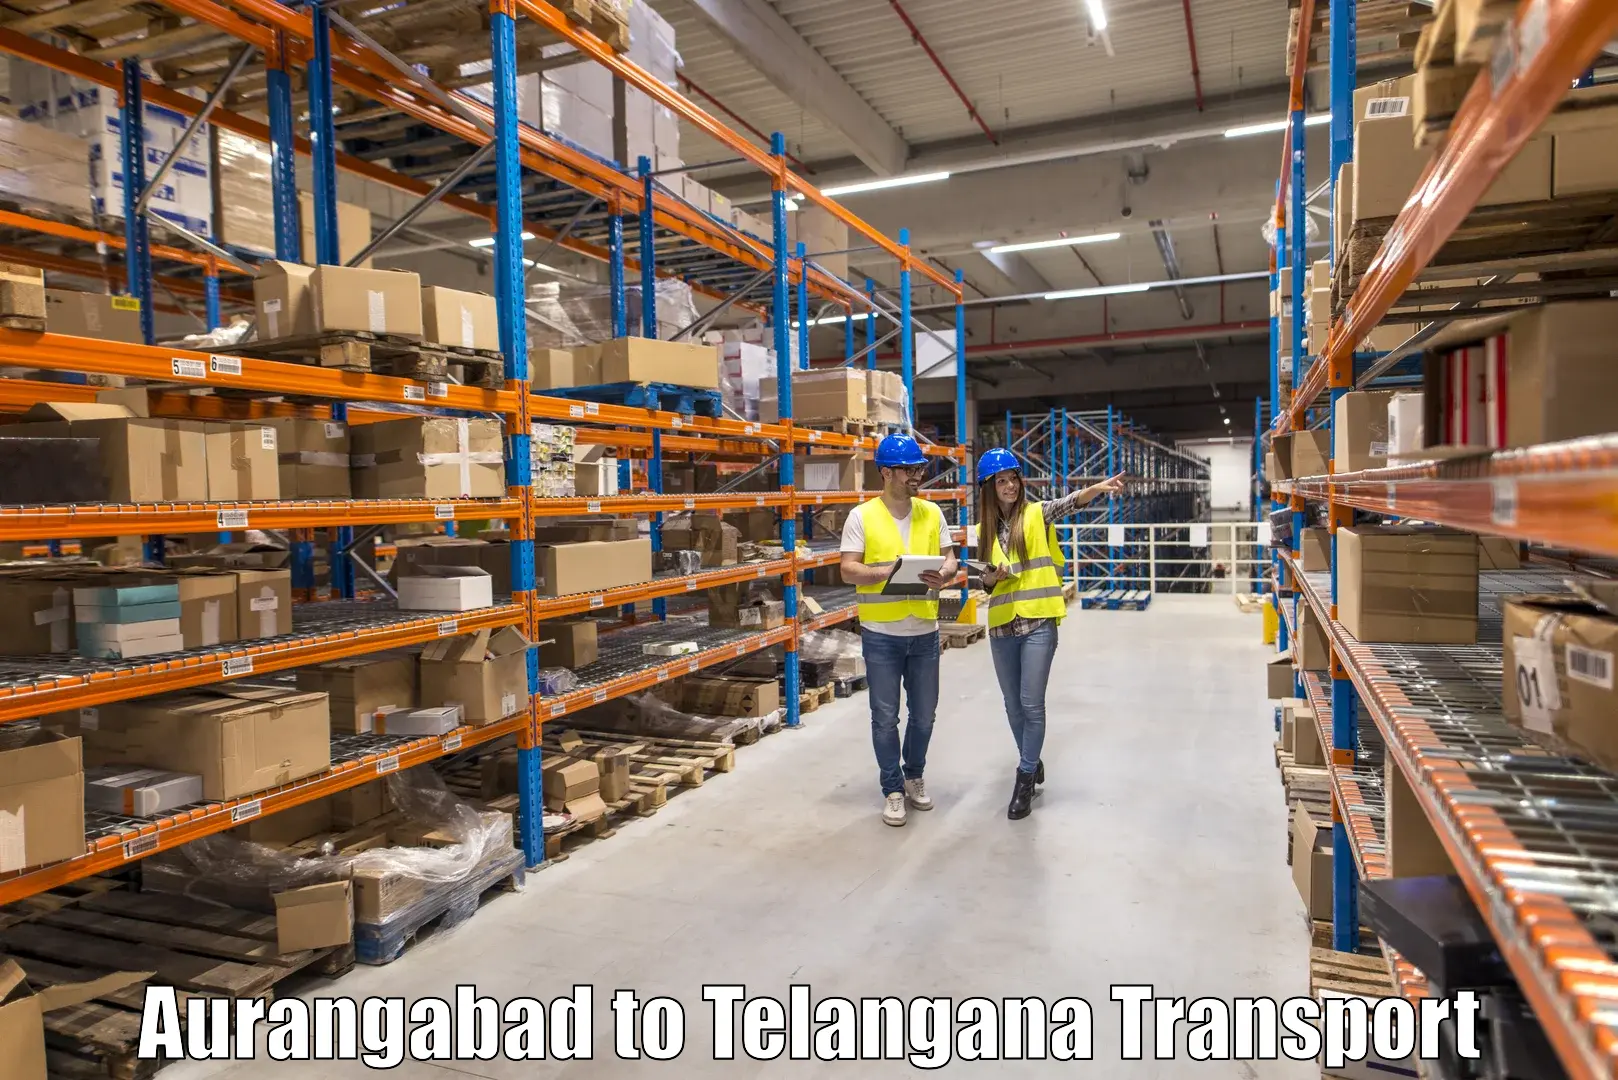 Cargo transportation services Aurangabad to Manthani